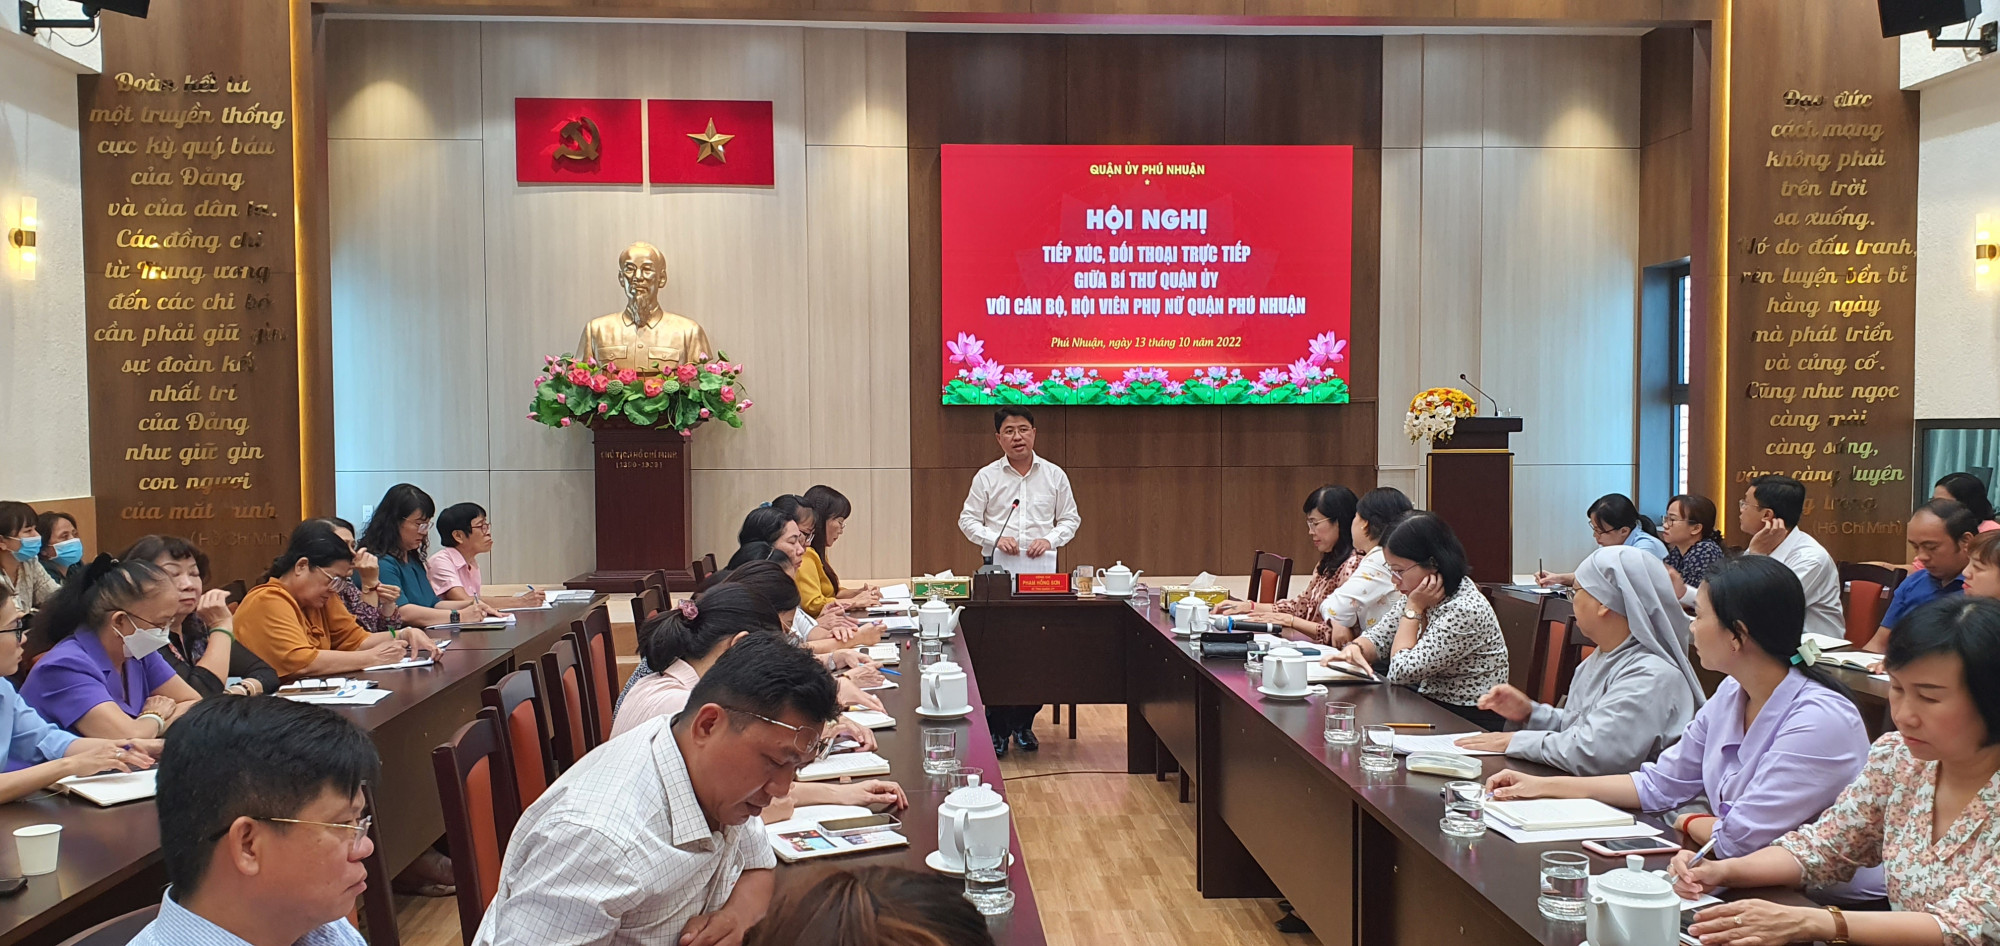 Chương trình đối thoại giữa Bí thư quận ủy quận Phú Nhuận với cán bộ, hội viên, phụ nữ